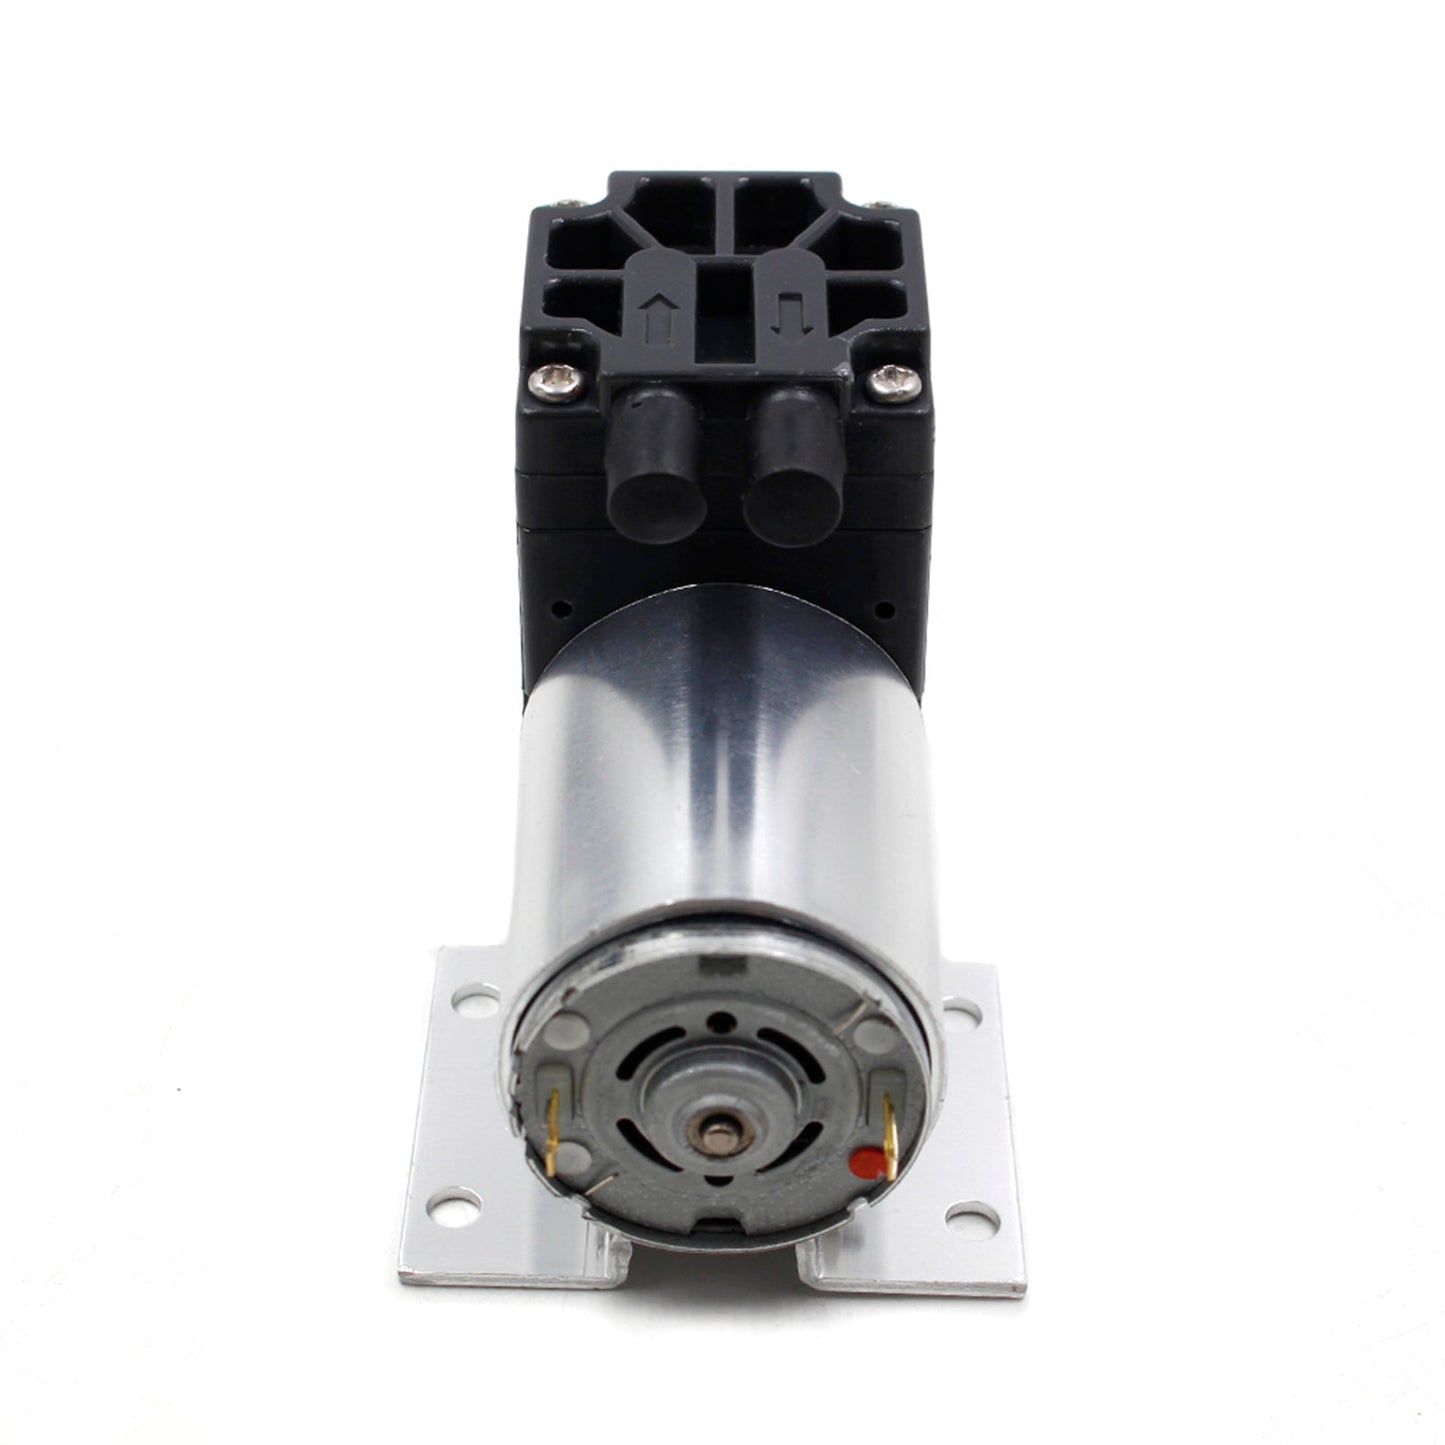 DC12V Mini Vacuum Pump Negative Pressure Suction Pump 5L/min 65kpa With Holder